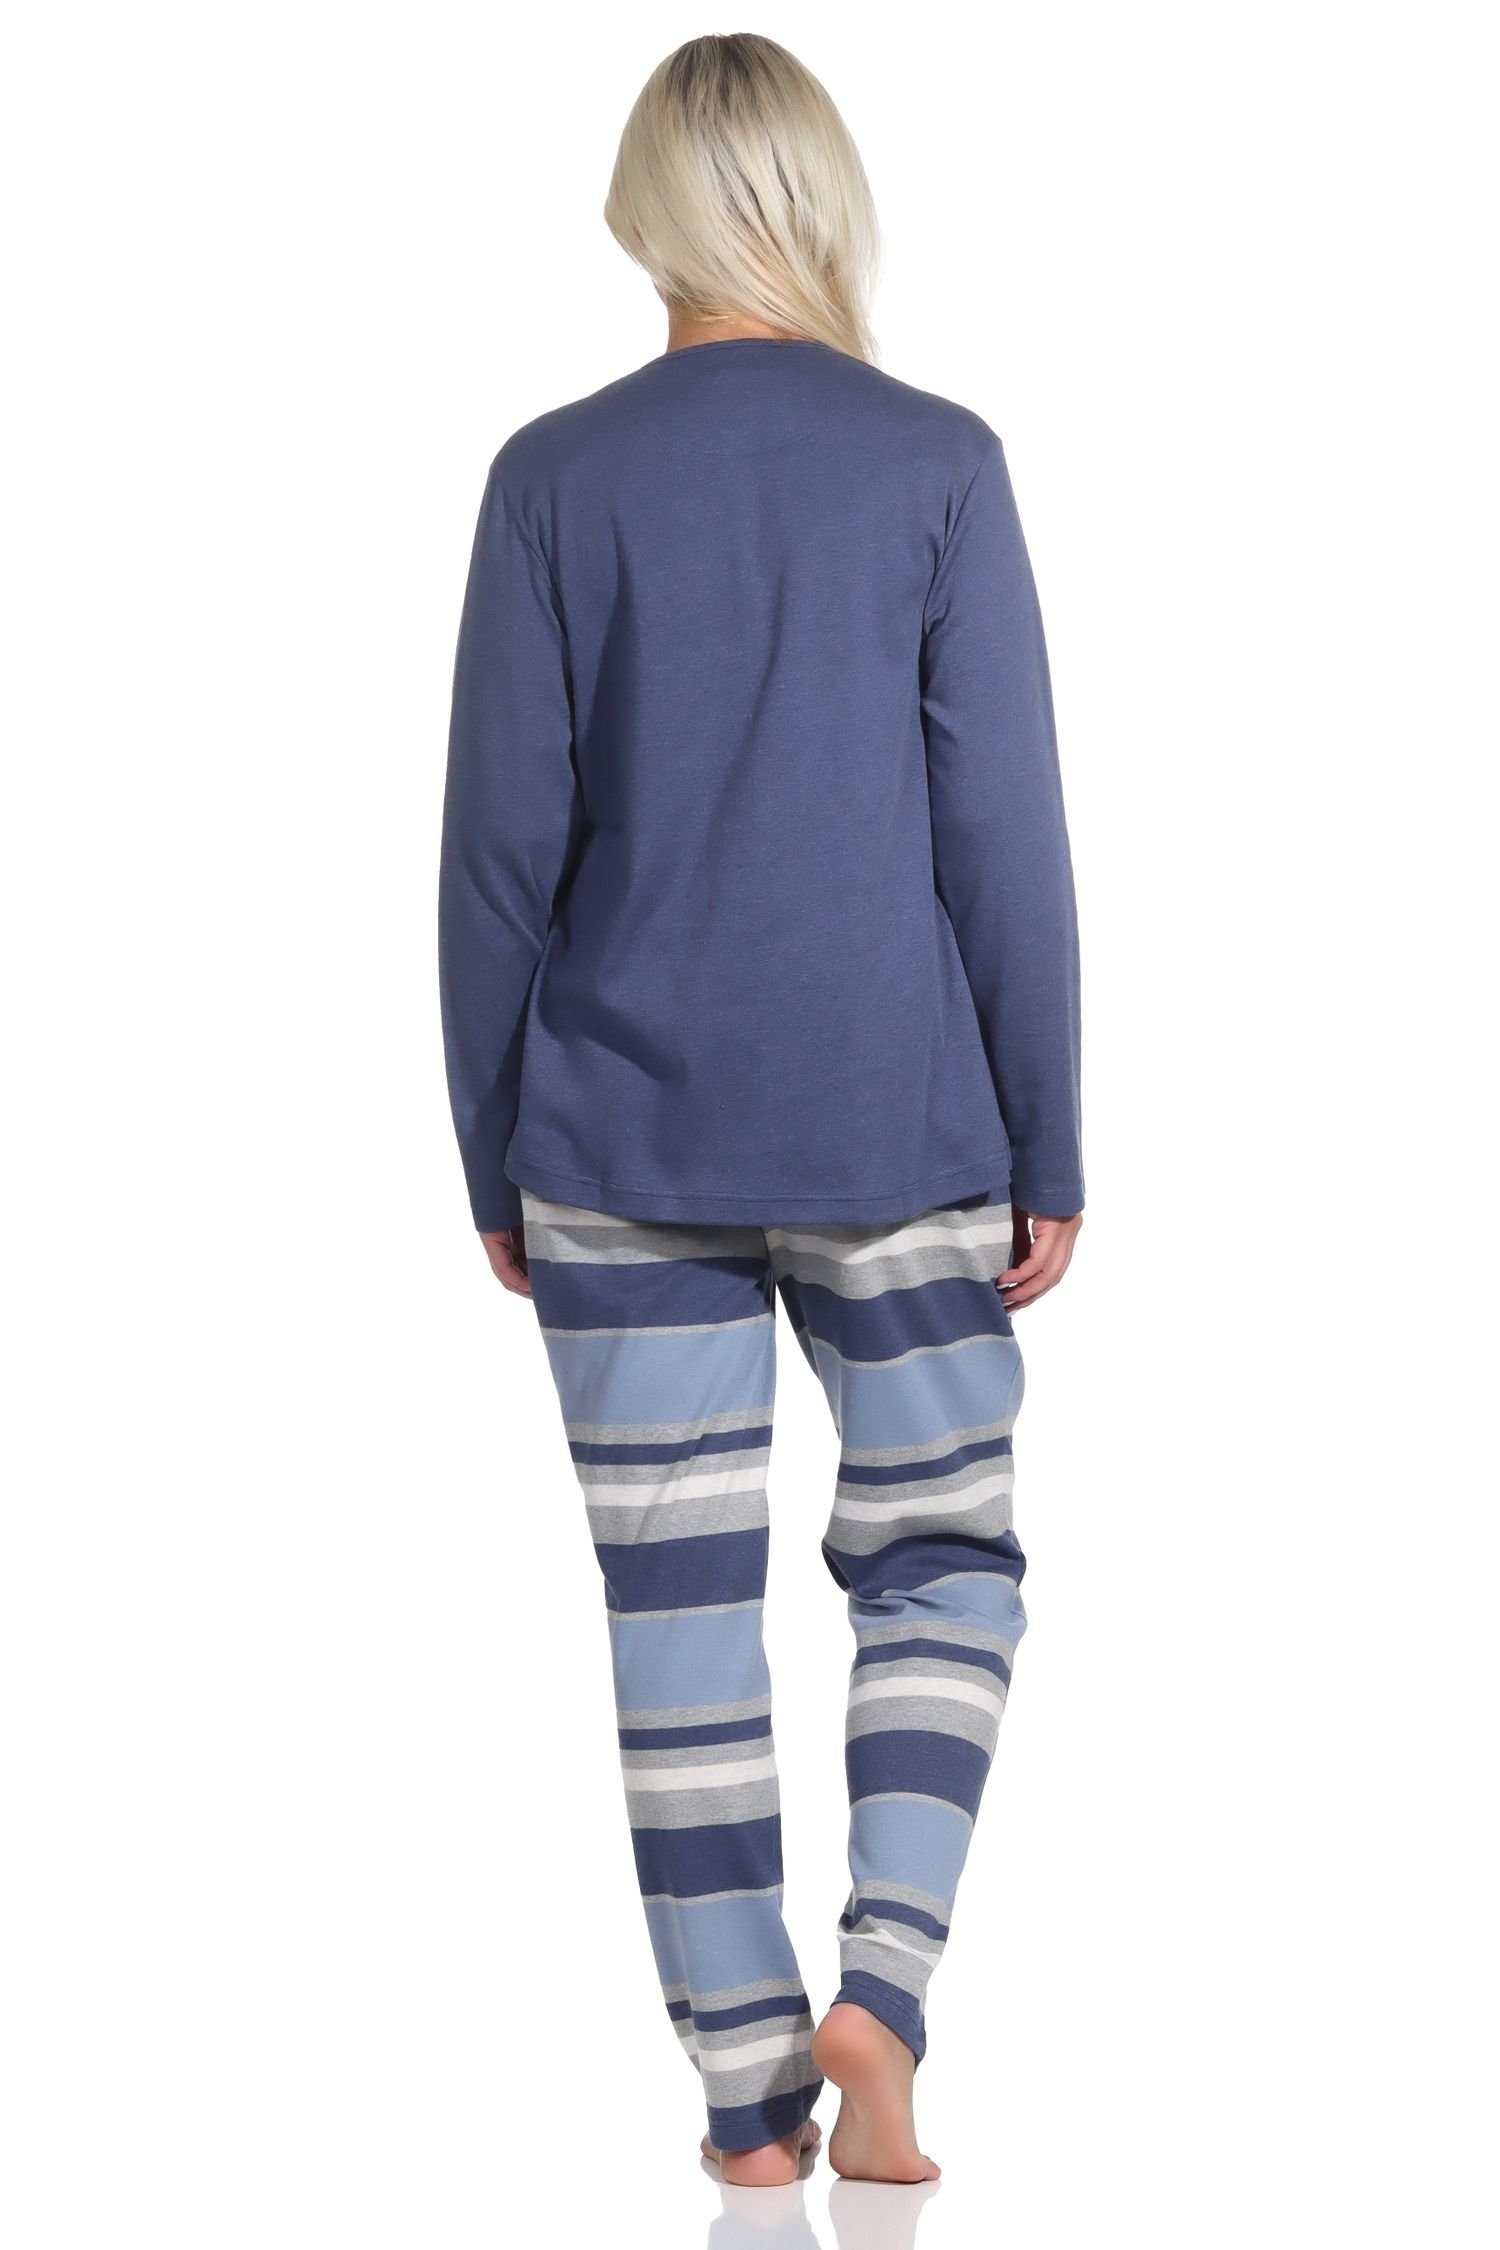 lang Pyjama in Pyjama Normann blau-melange Qualität Interlock kuscheliger Schlafanzug Damen